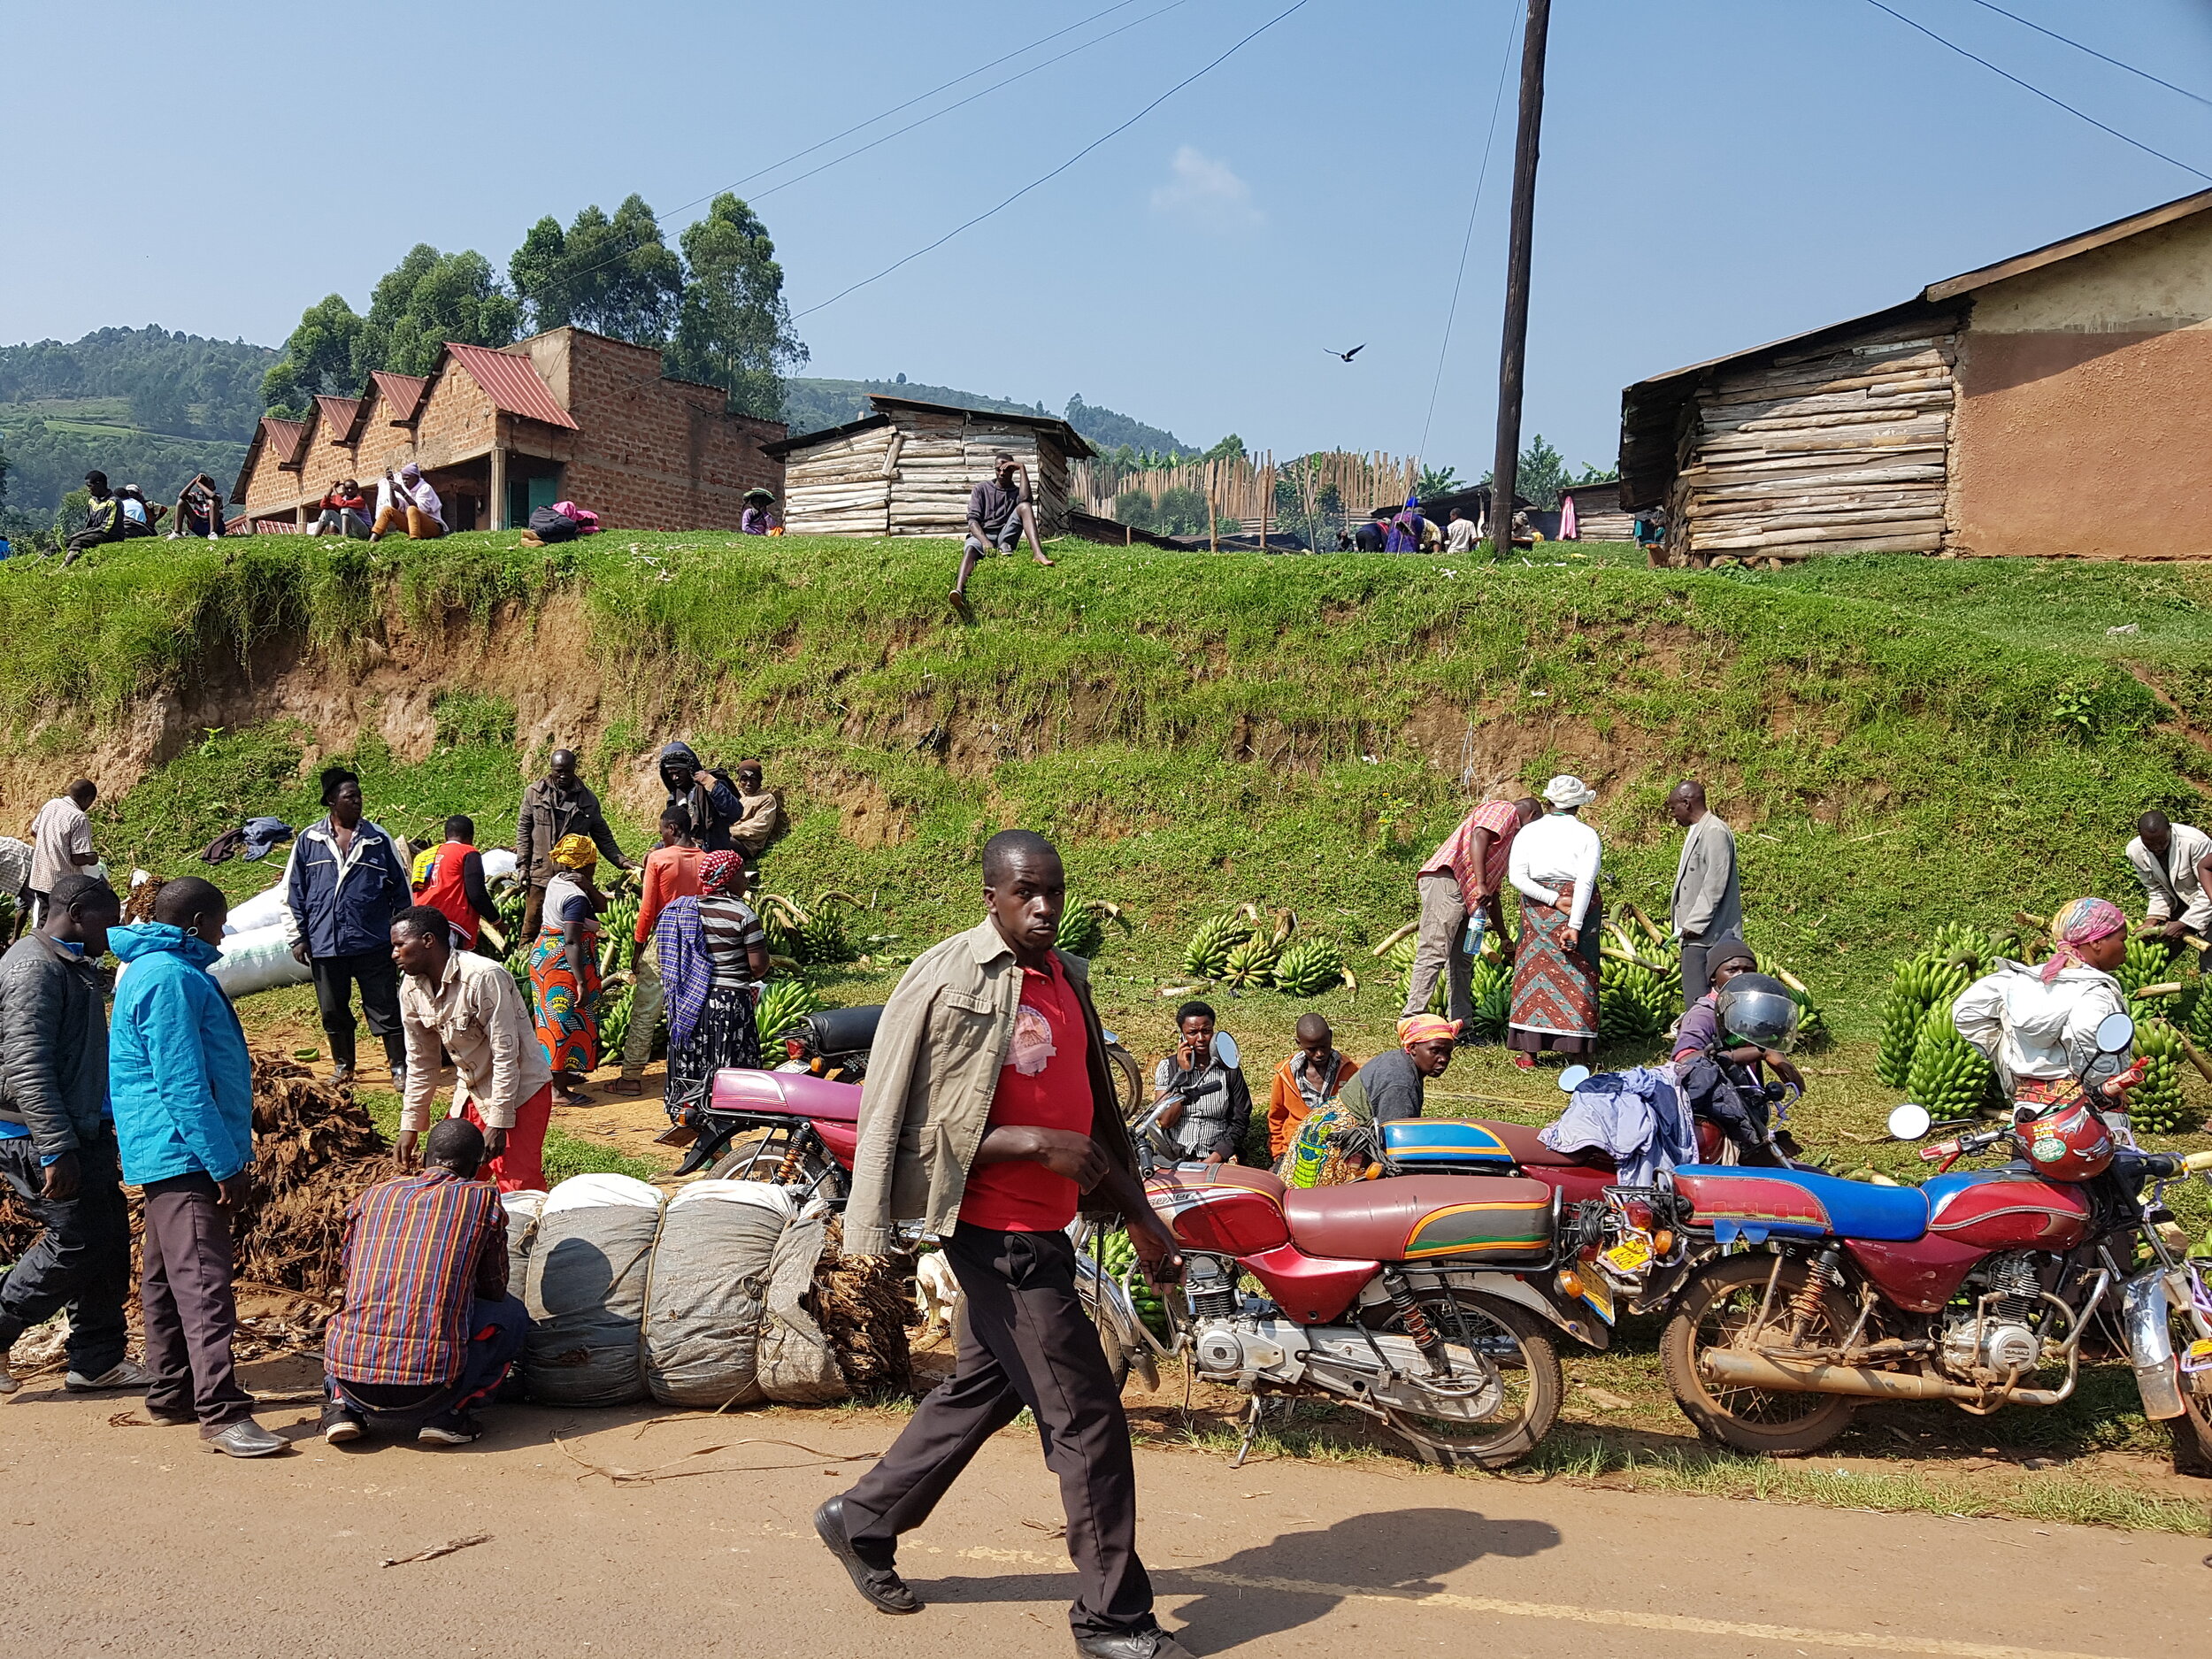 On the road between Kigali and Bwindi in Uganda